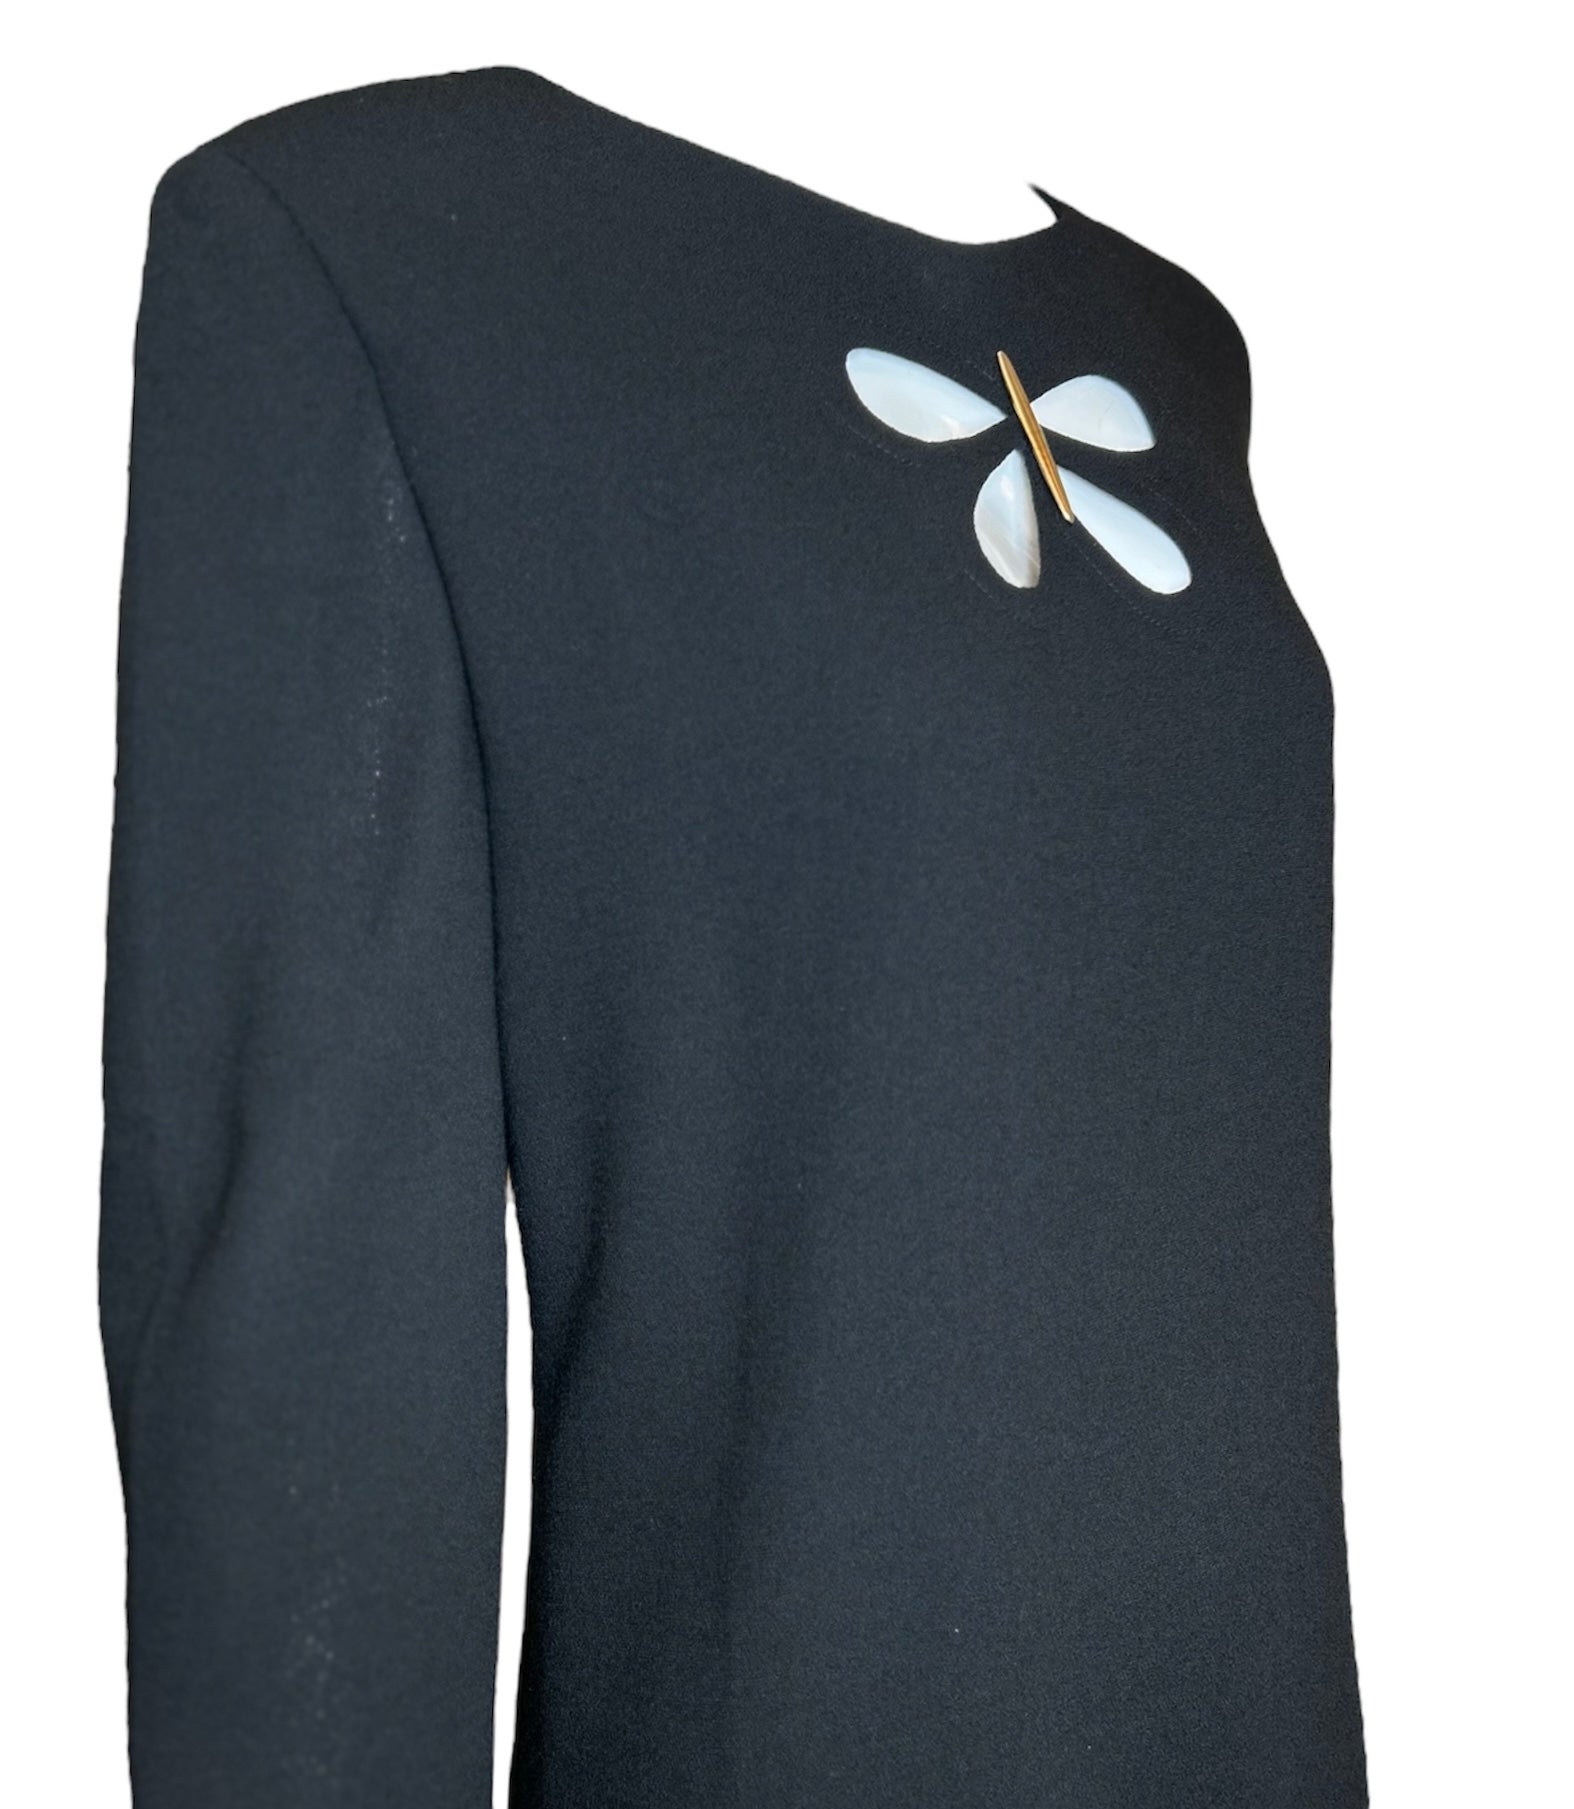 Pierre Cardin Black Mod Butterfly Shift Dress DETAIL PHOTO 2 OF 5